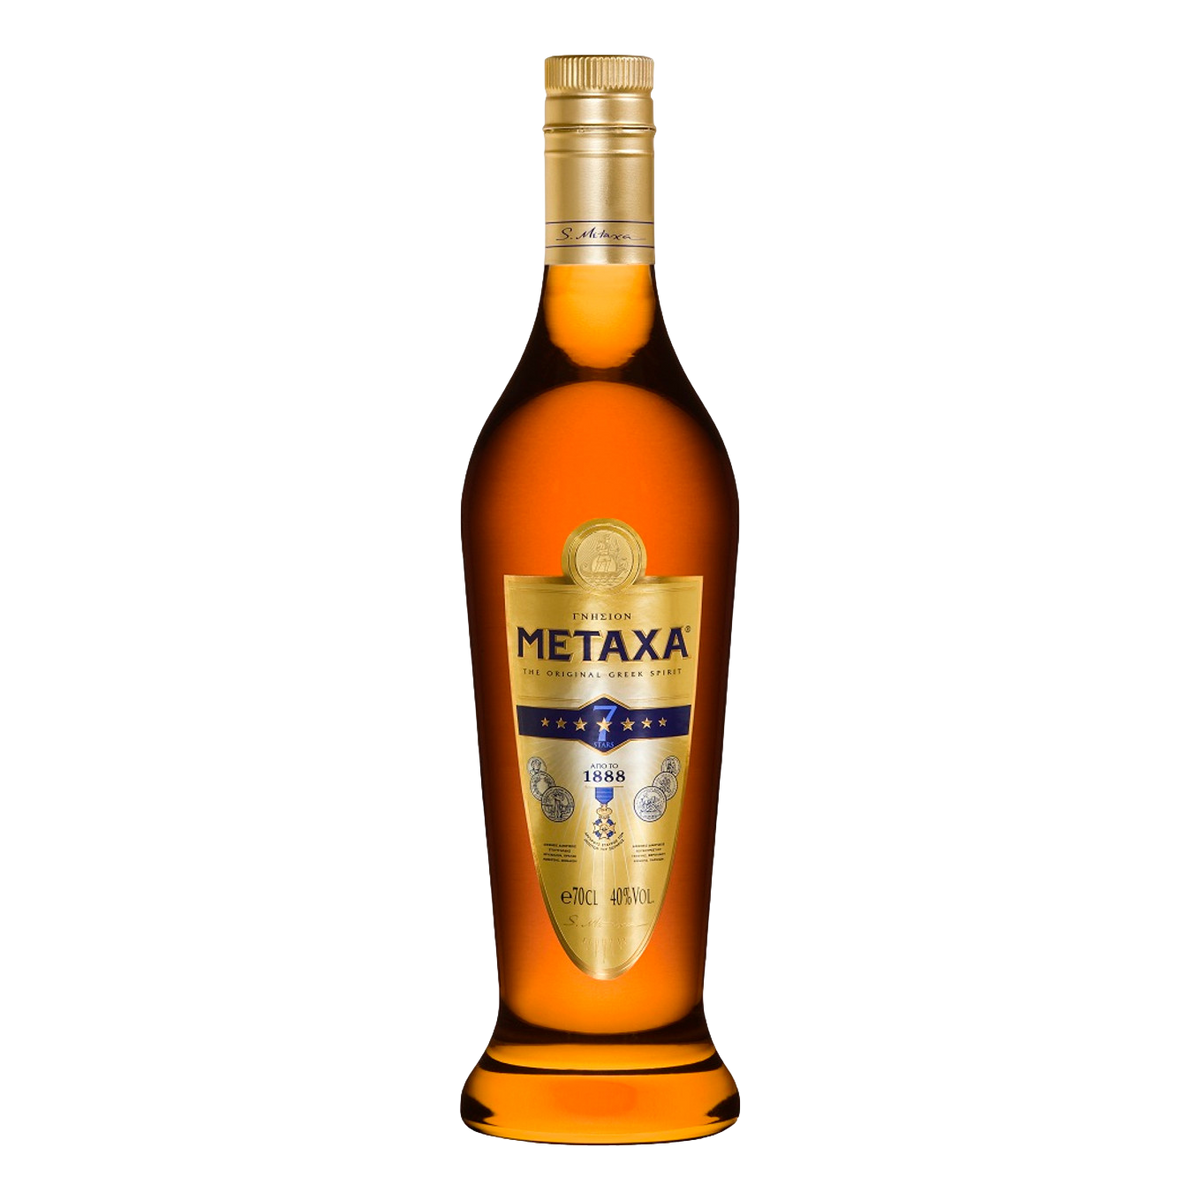 Metaxa Brandy 7 Star 700ml